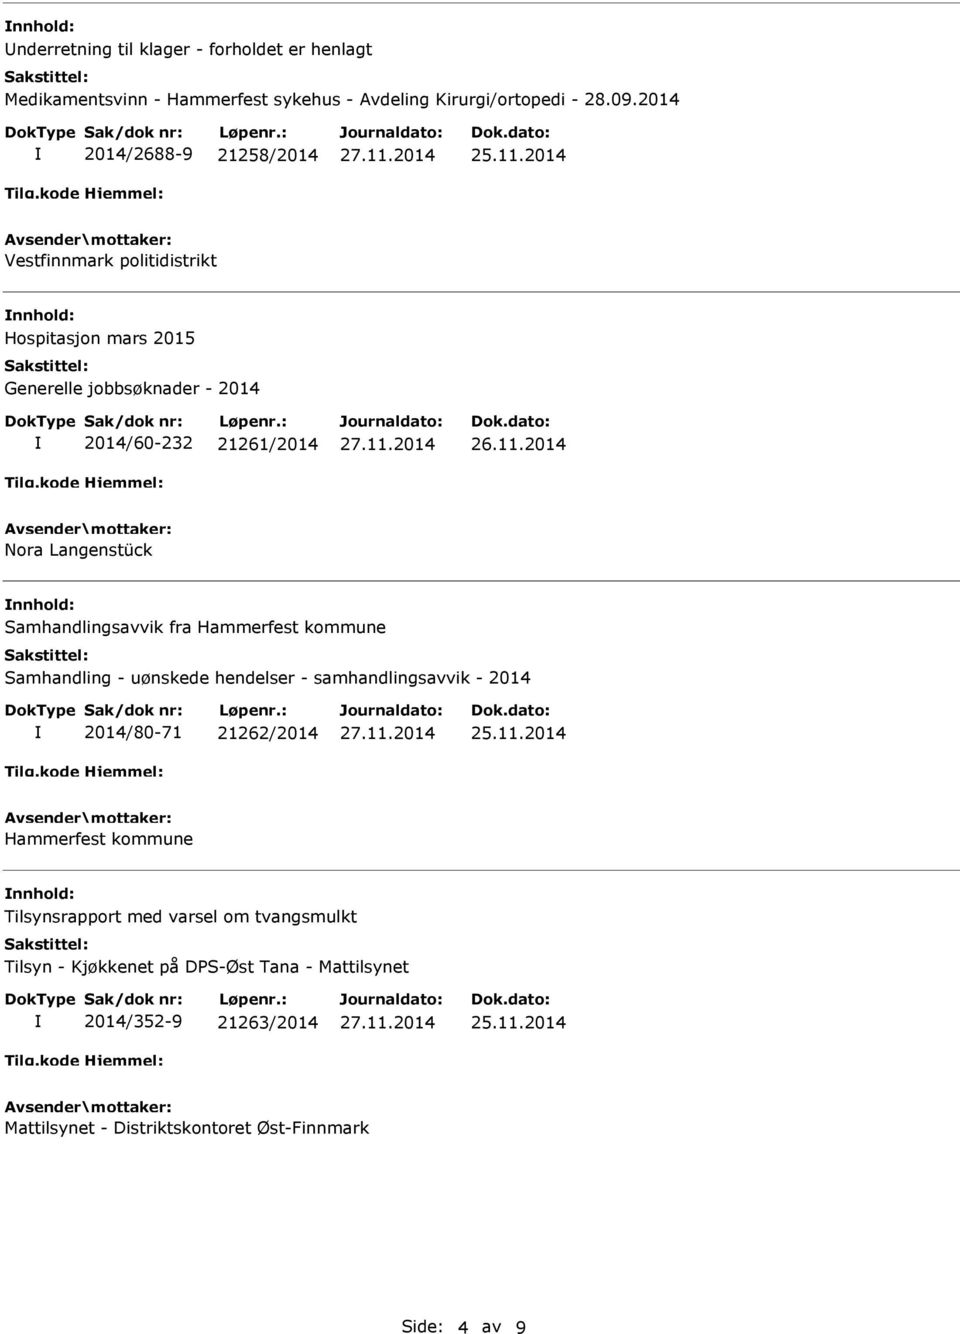 2014 Nora Langenstück nnhold: Samhandlingsavvik fra Hammerfest kommune Samhandling - uønskede hendelser - samhandlingsavvik - 2014 2014/80-71 21262/2014